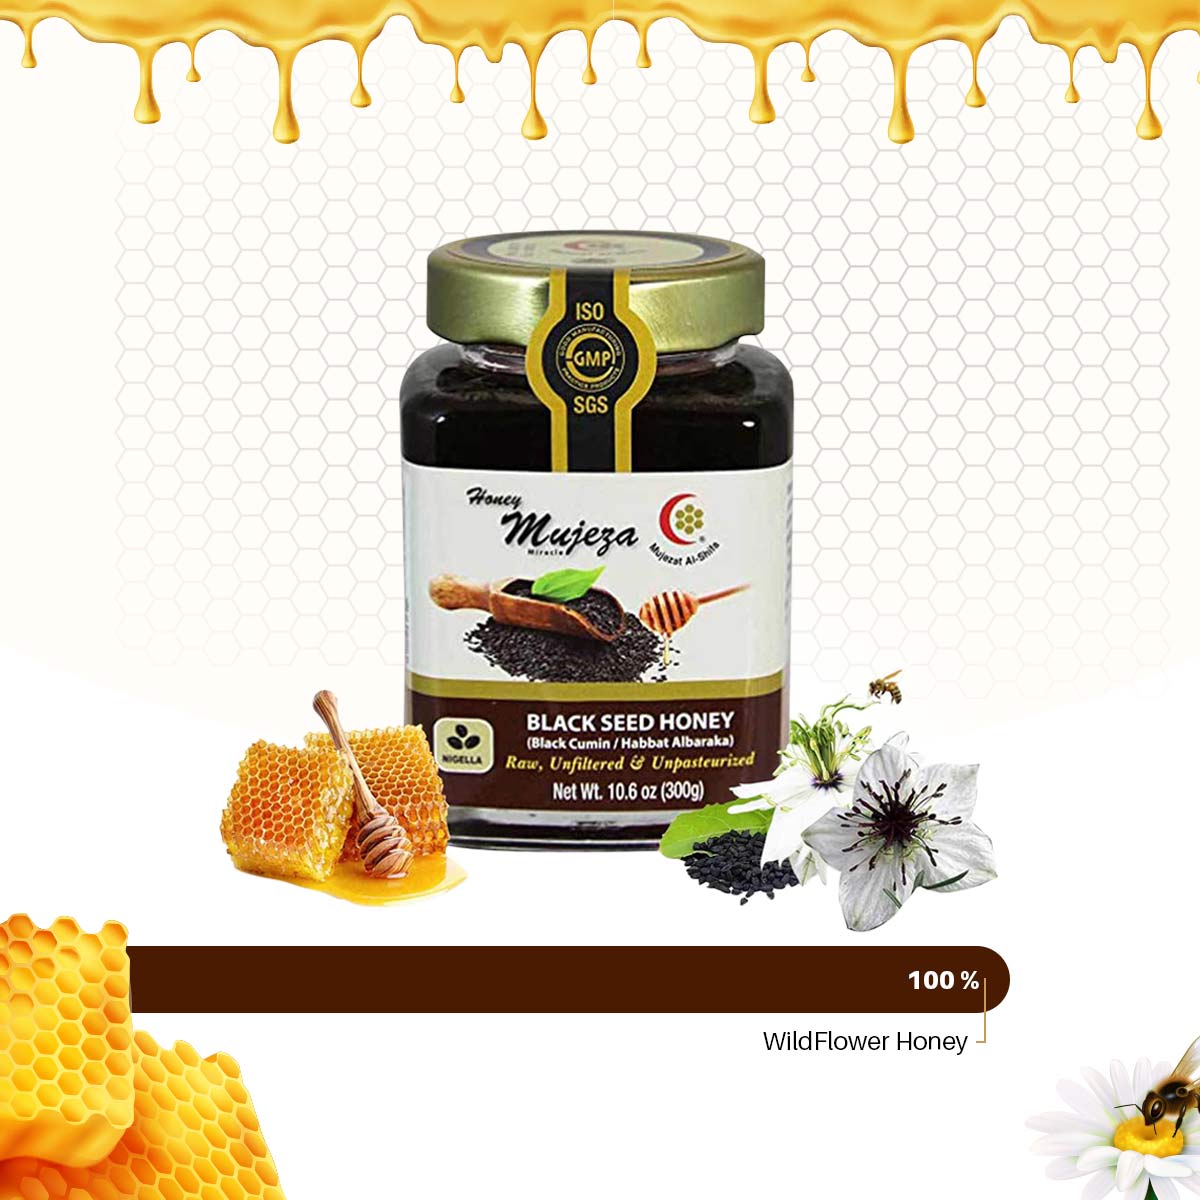 Pure Black Seed Honey jar unfused with Black Cumin - عسل الحبة السوداء / حبة البركة مع الكمون - Mujeza Honey